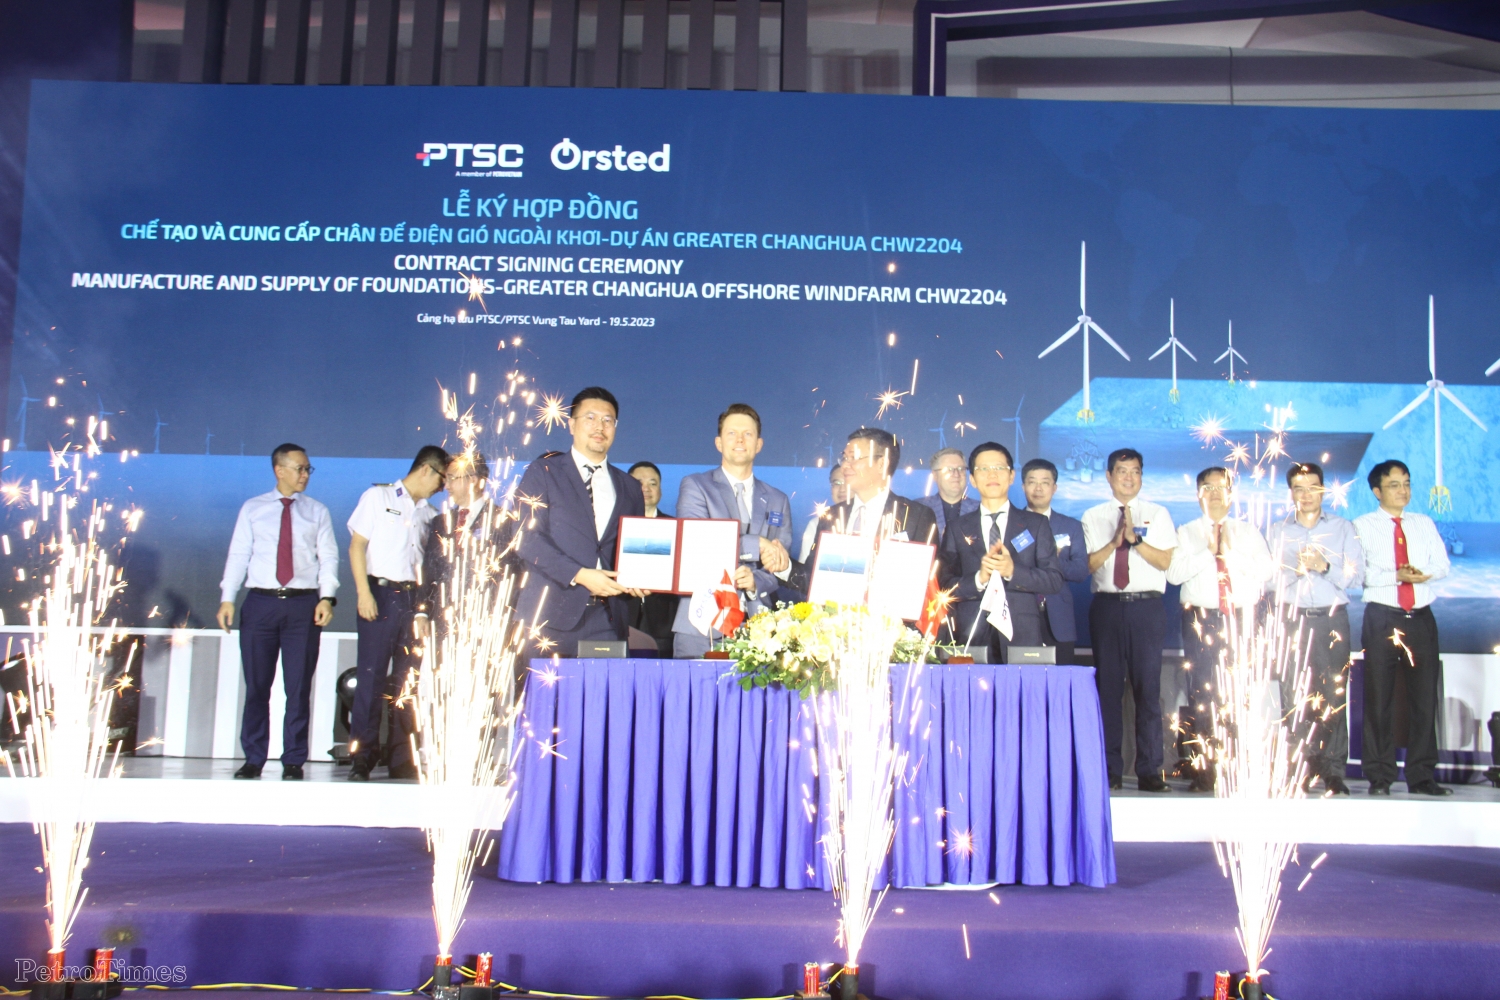 PTSC ký hợp đồng chế tạo và cung cấp chân đế điện gió ngoài khơi cho Đài Loan (Trung Quốc)